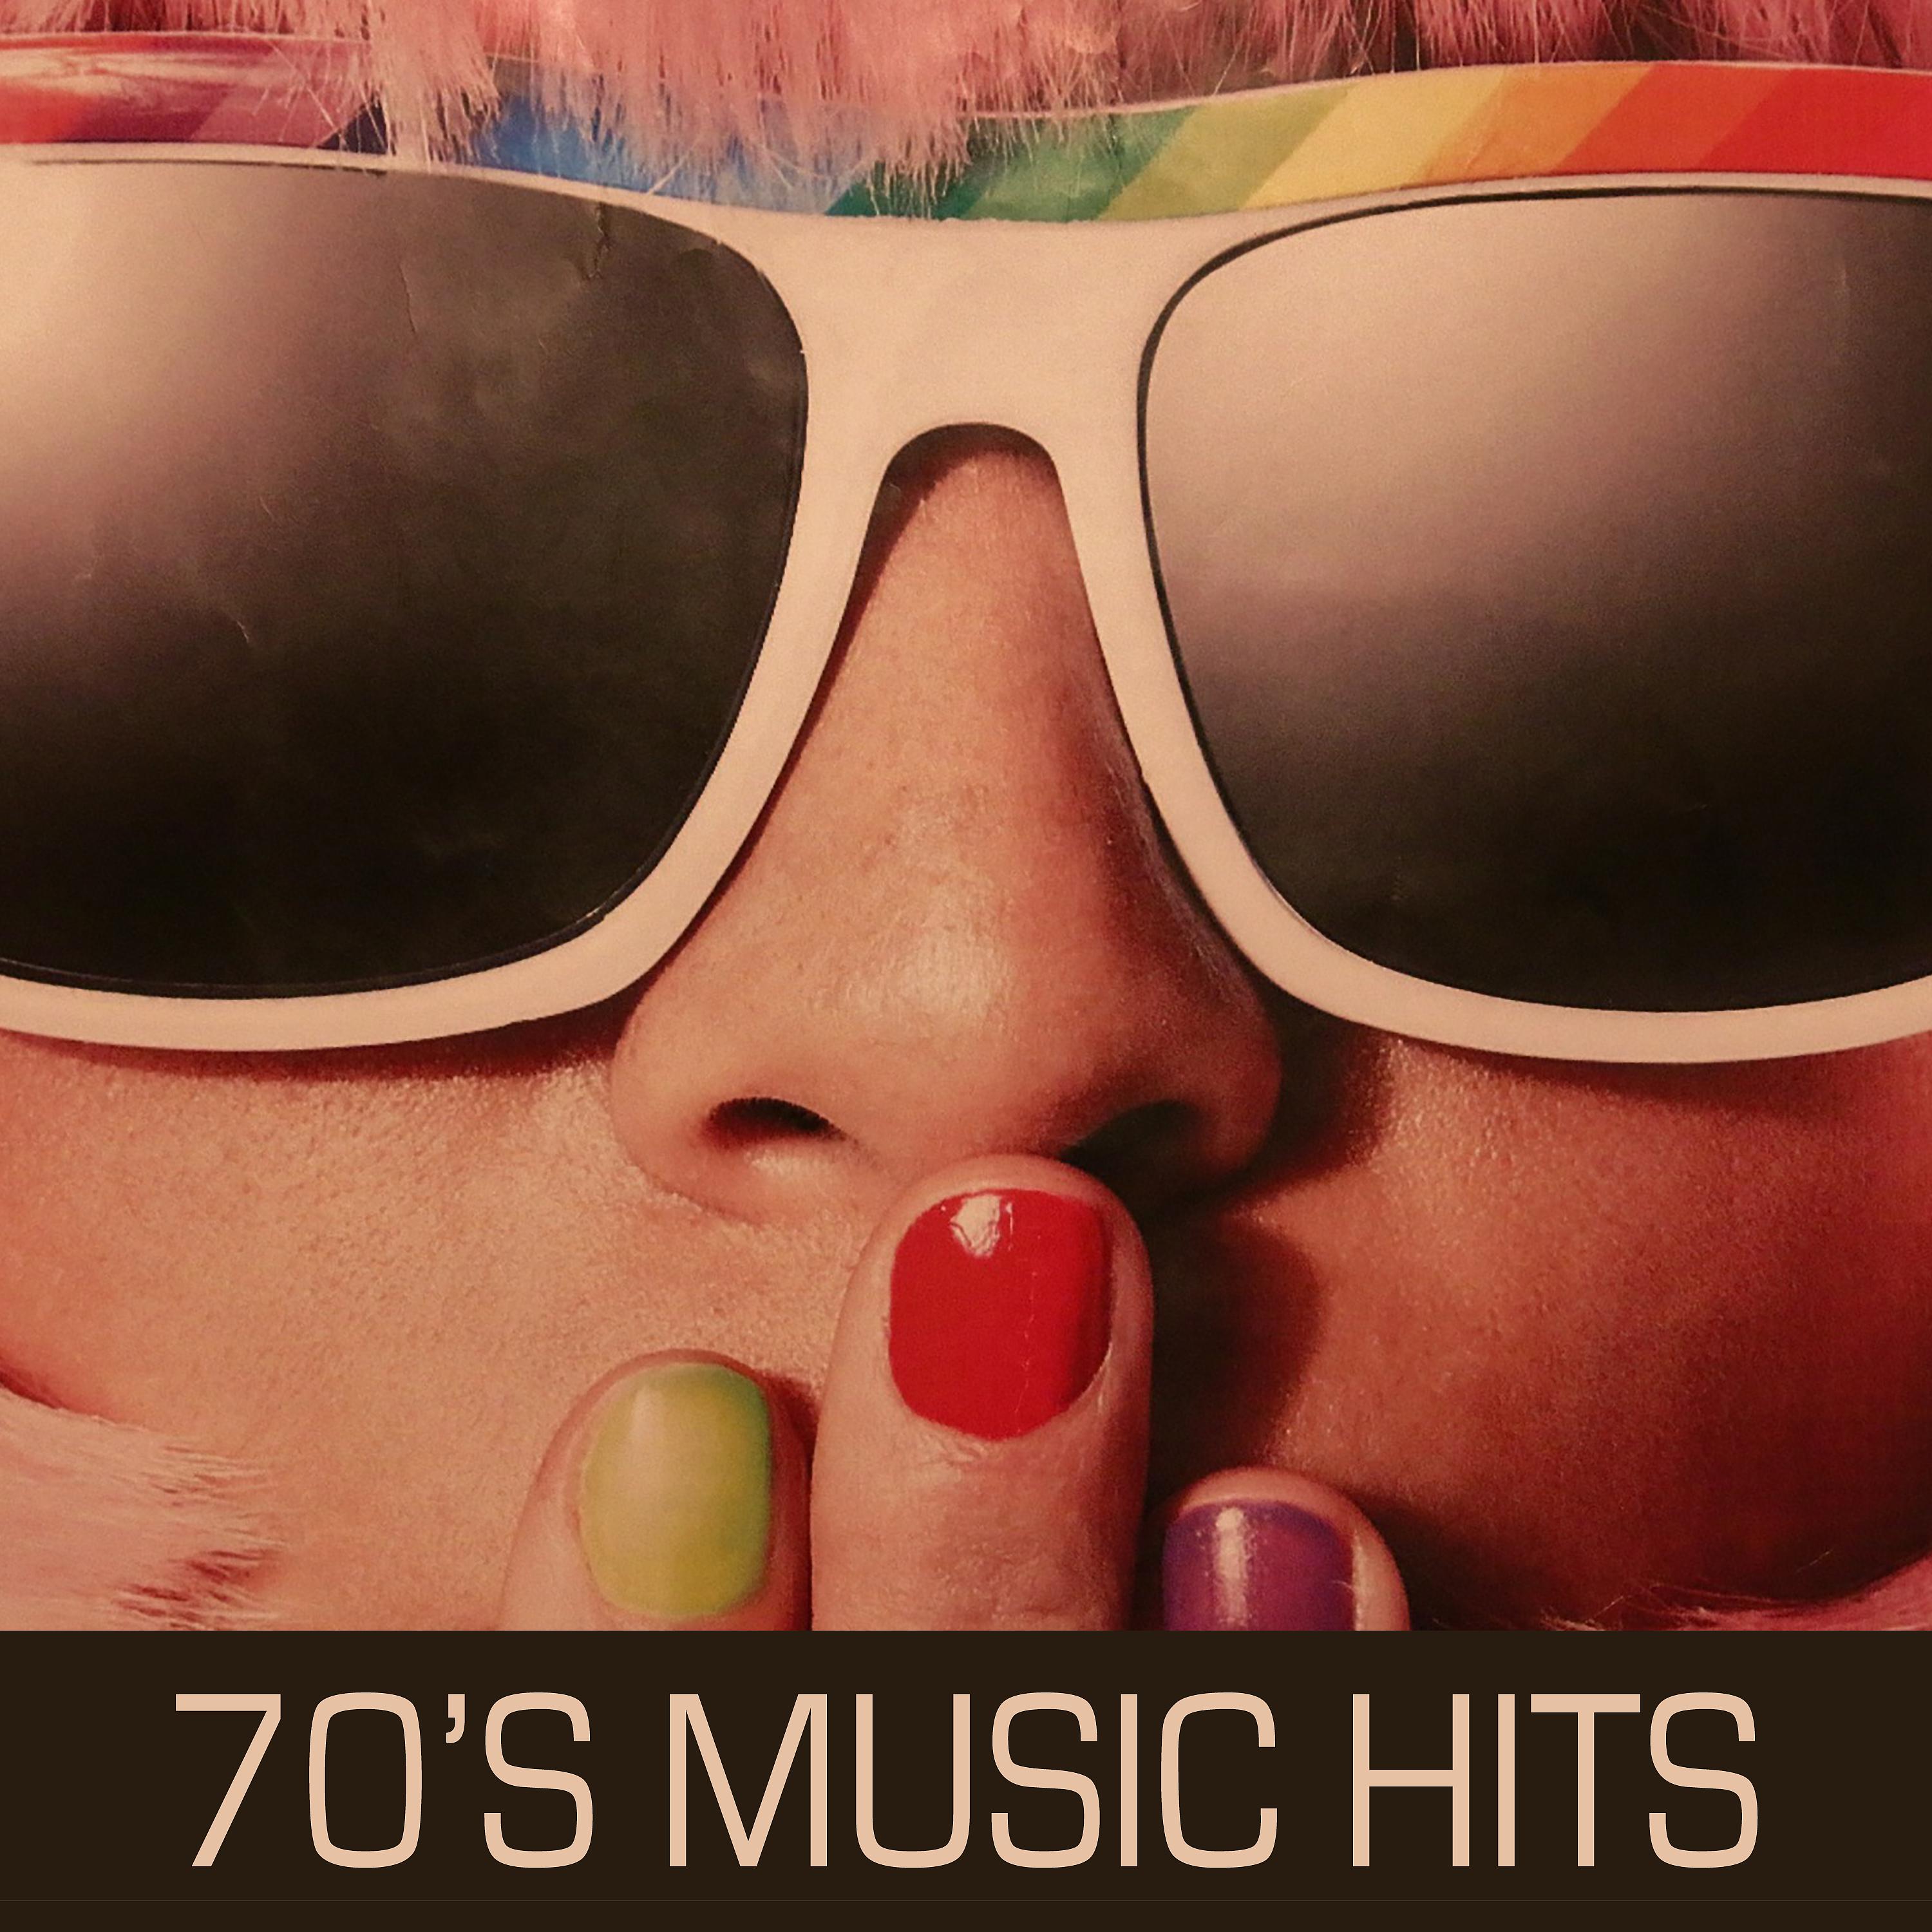 Постер альбома 70's Music Hits: Músicas Oldies en Inglés Años 1970's. Música Disco, Soft Rock y Baladas Rock de los 70